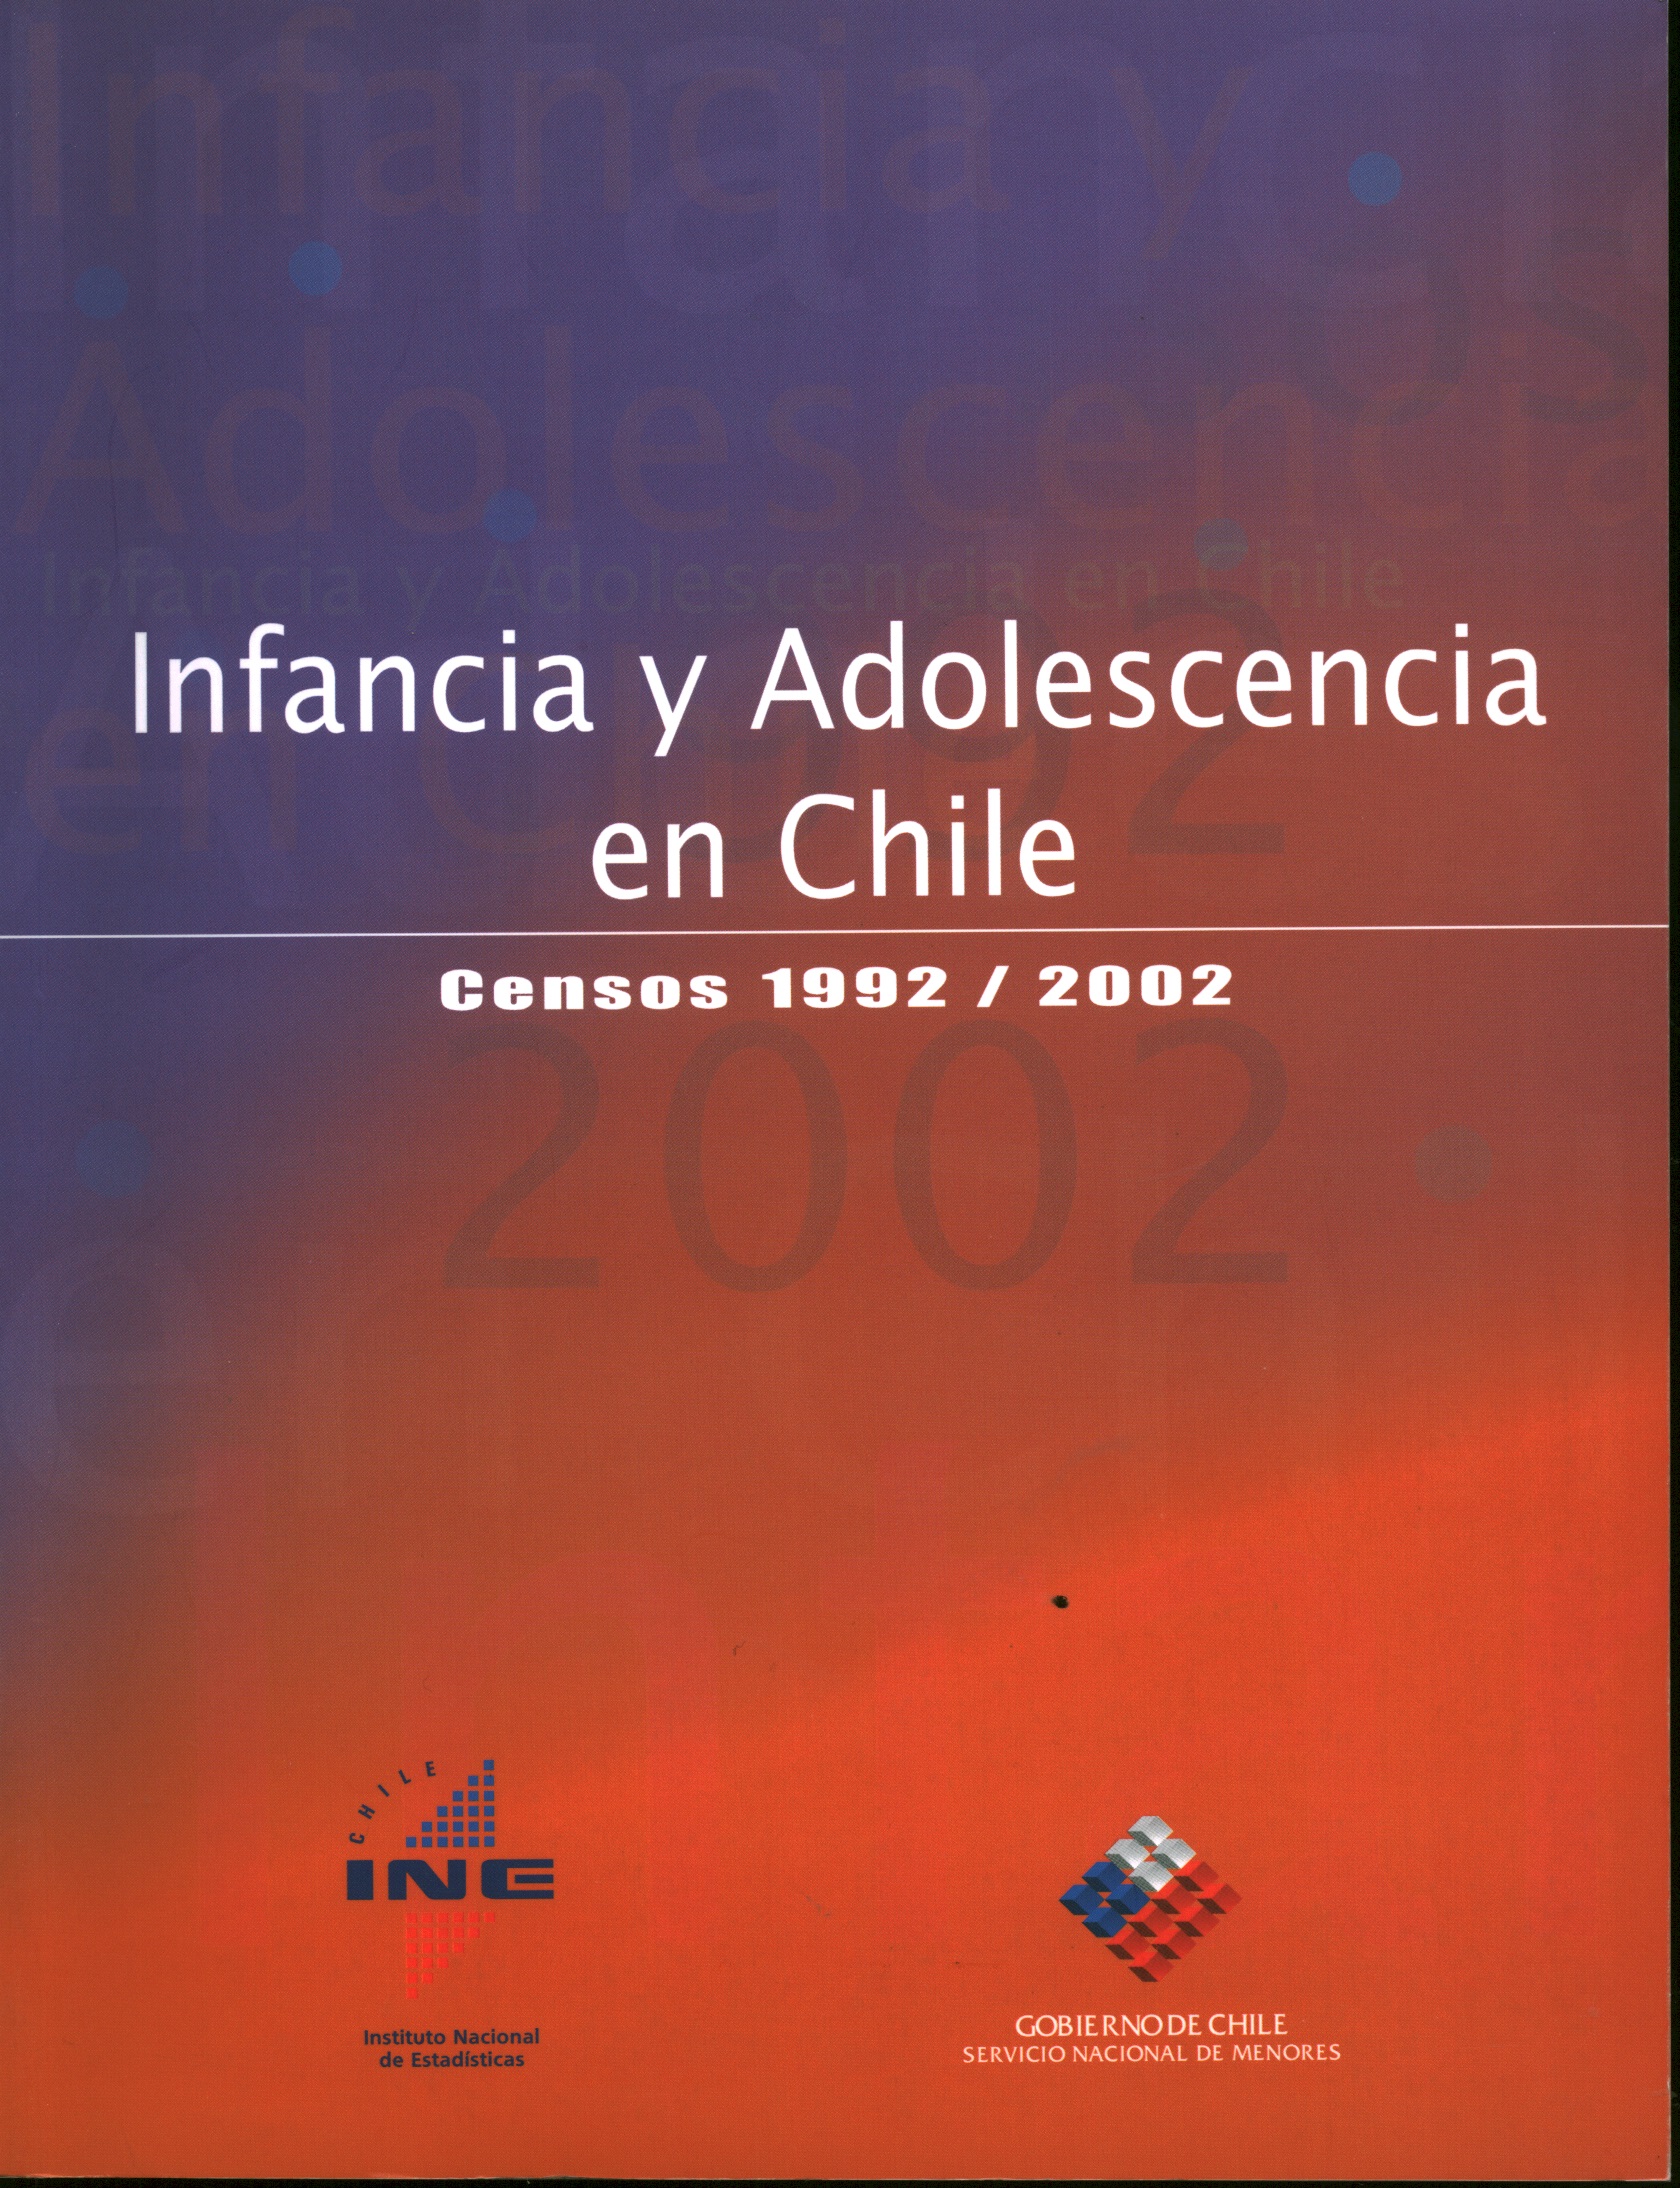 Infancia y adolescencia en Chile. Censos 1992/2002